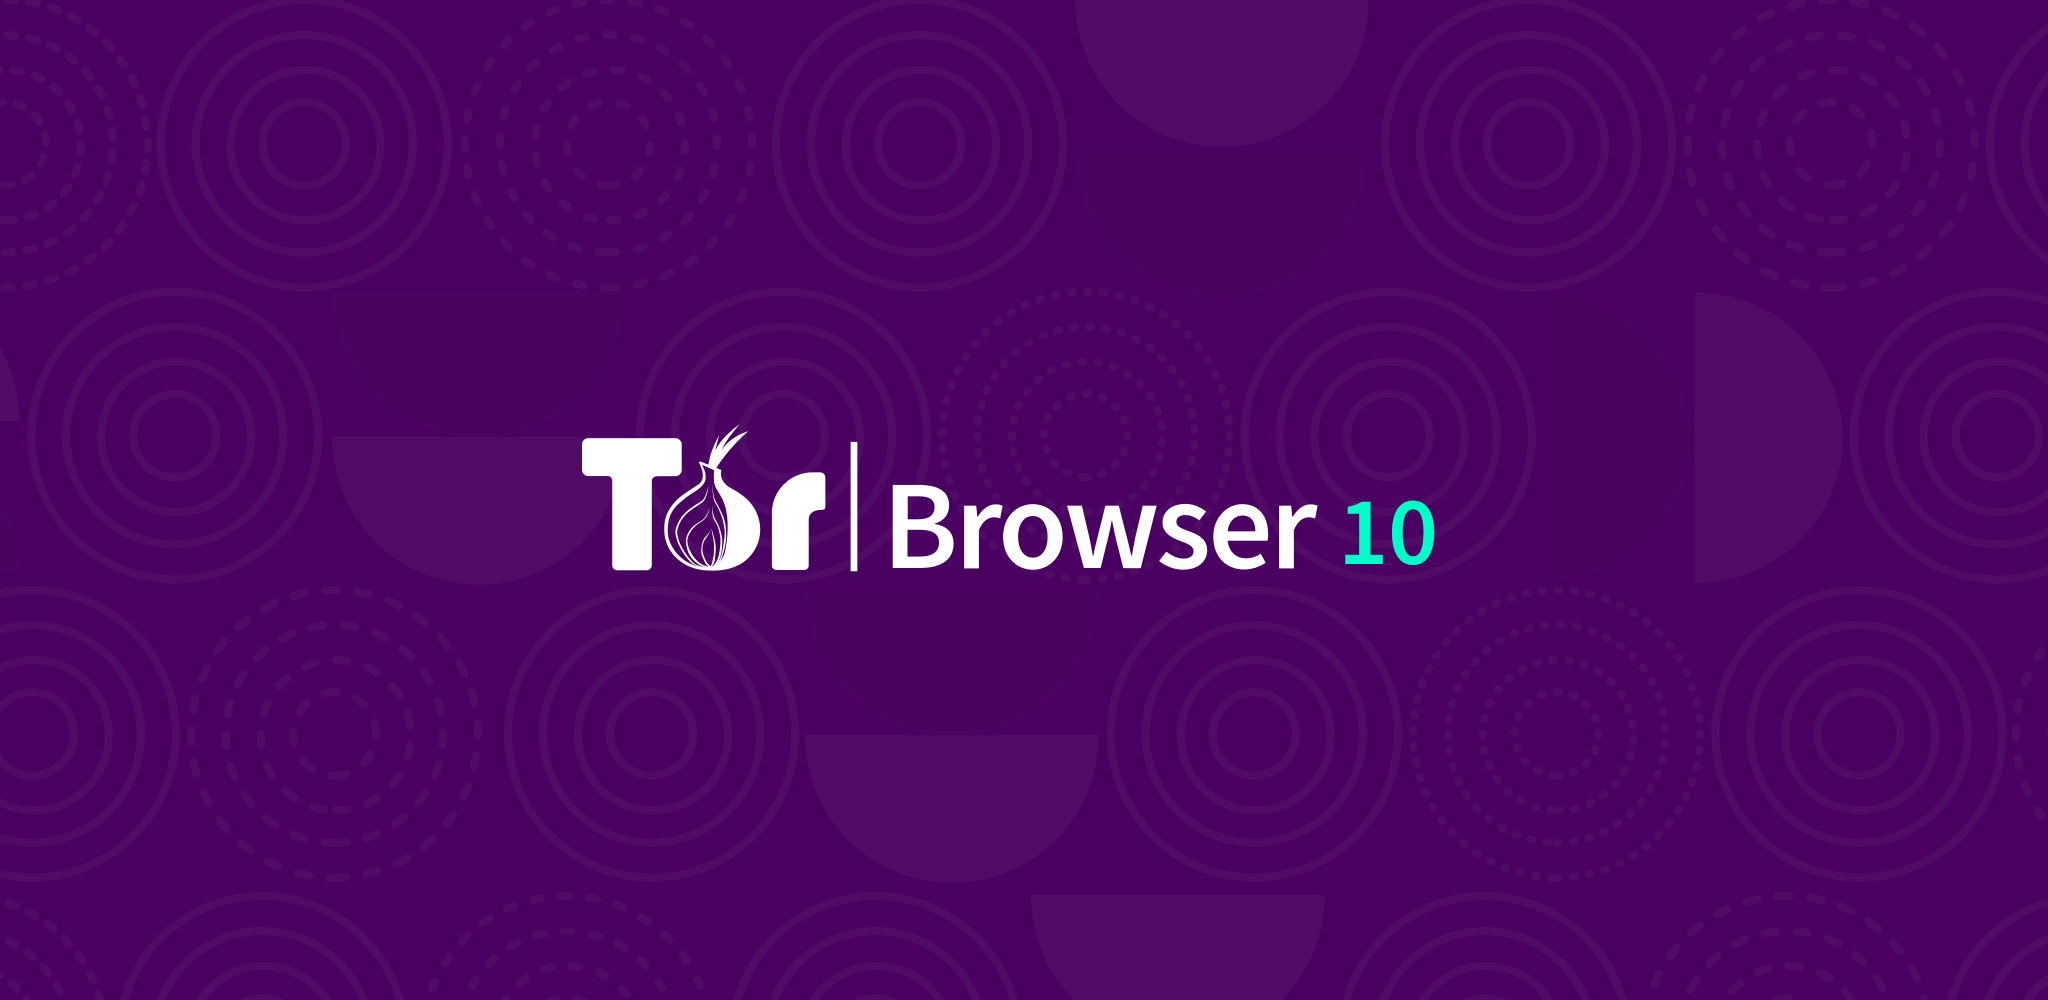 tor browser по почте mega